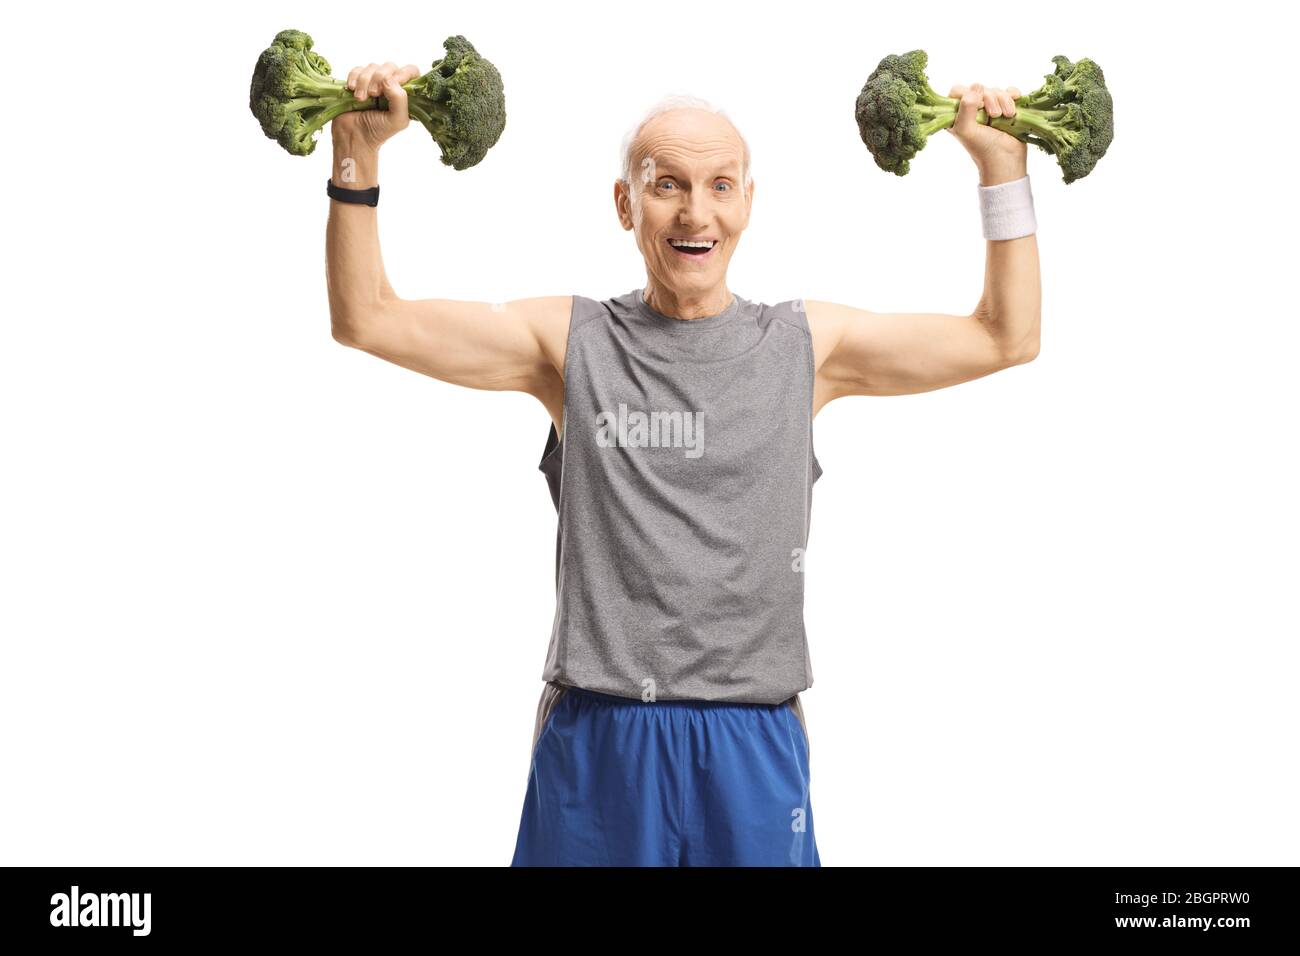 Ältere Mann in Sportbekleidung Heben Broccoli statt Gewichte auf weißem Hintergrund isoliert Stockfoto